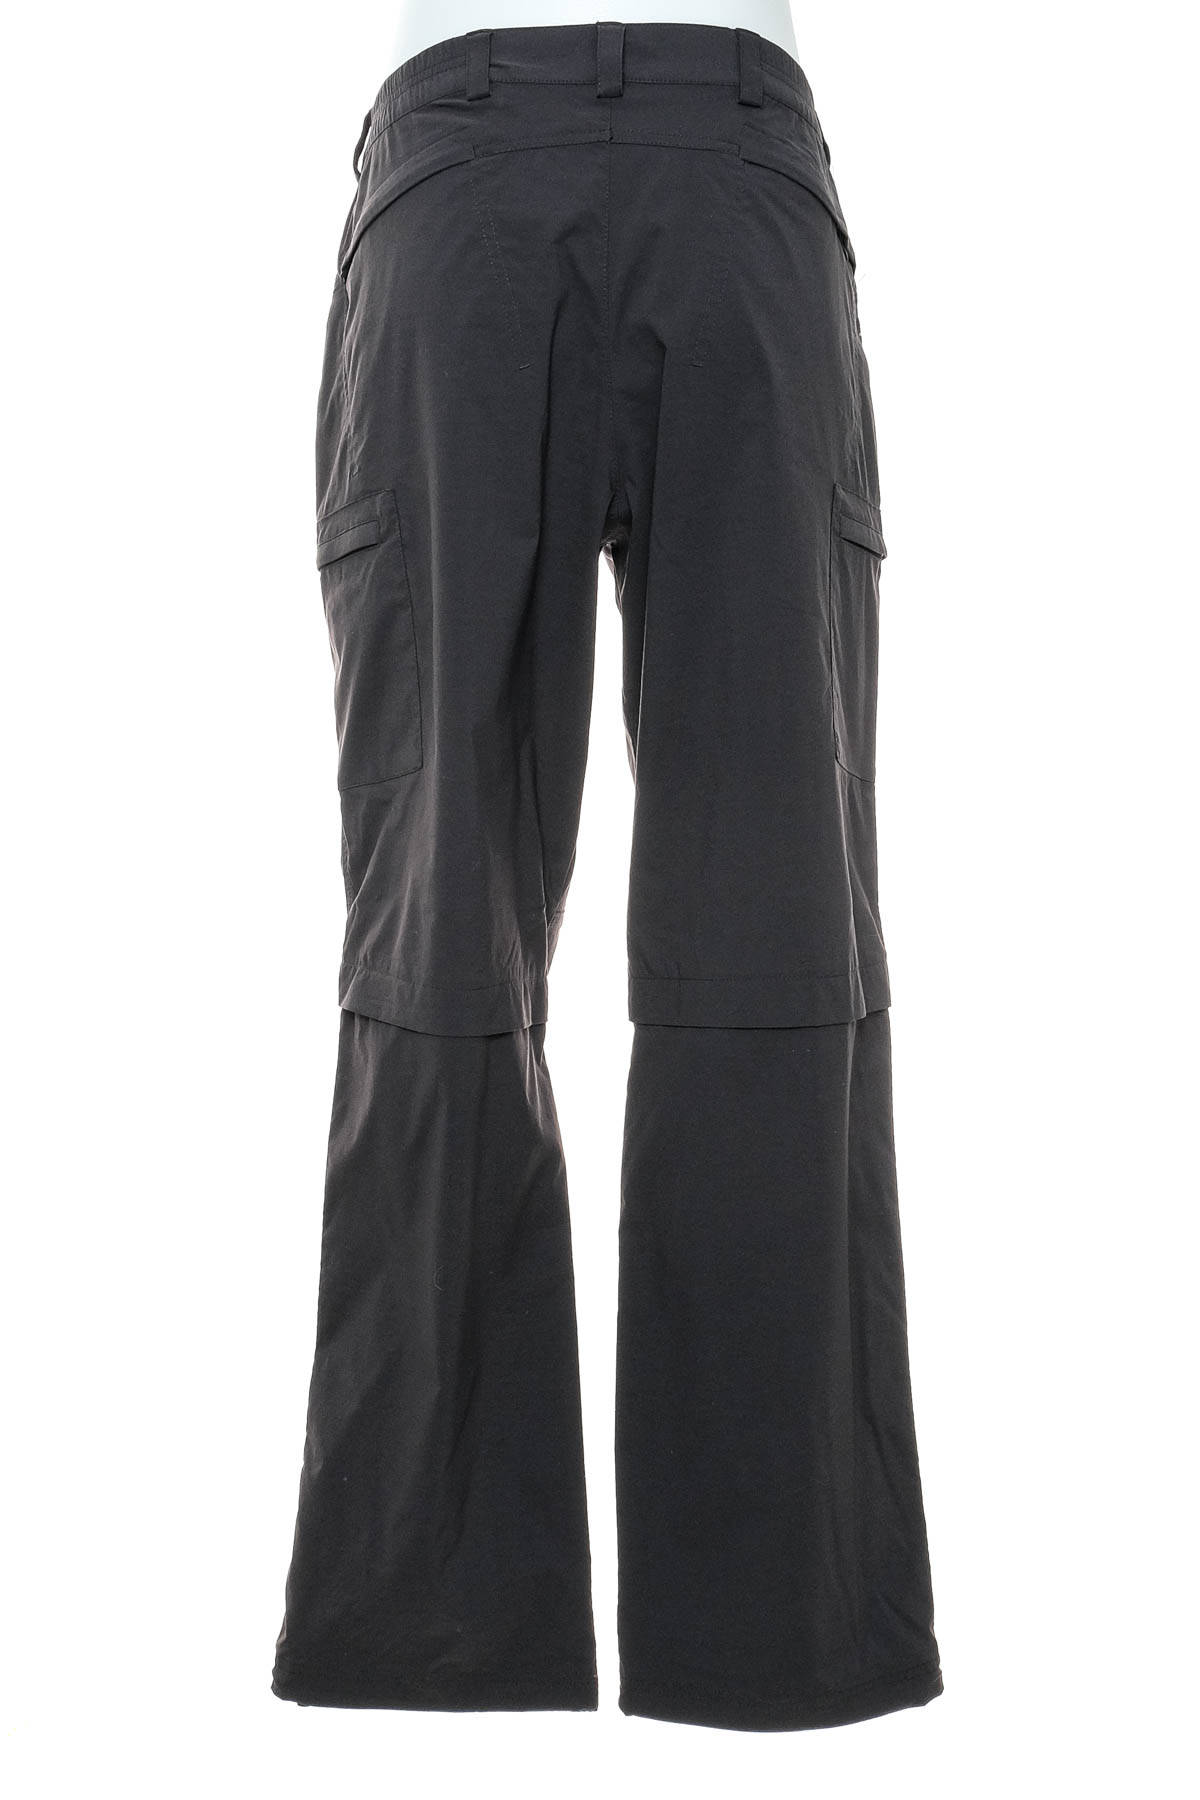 Pantalon pentru bărbați - Maul - 1